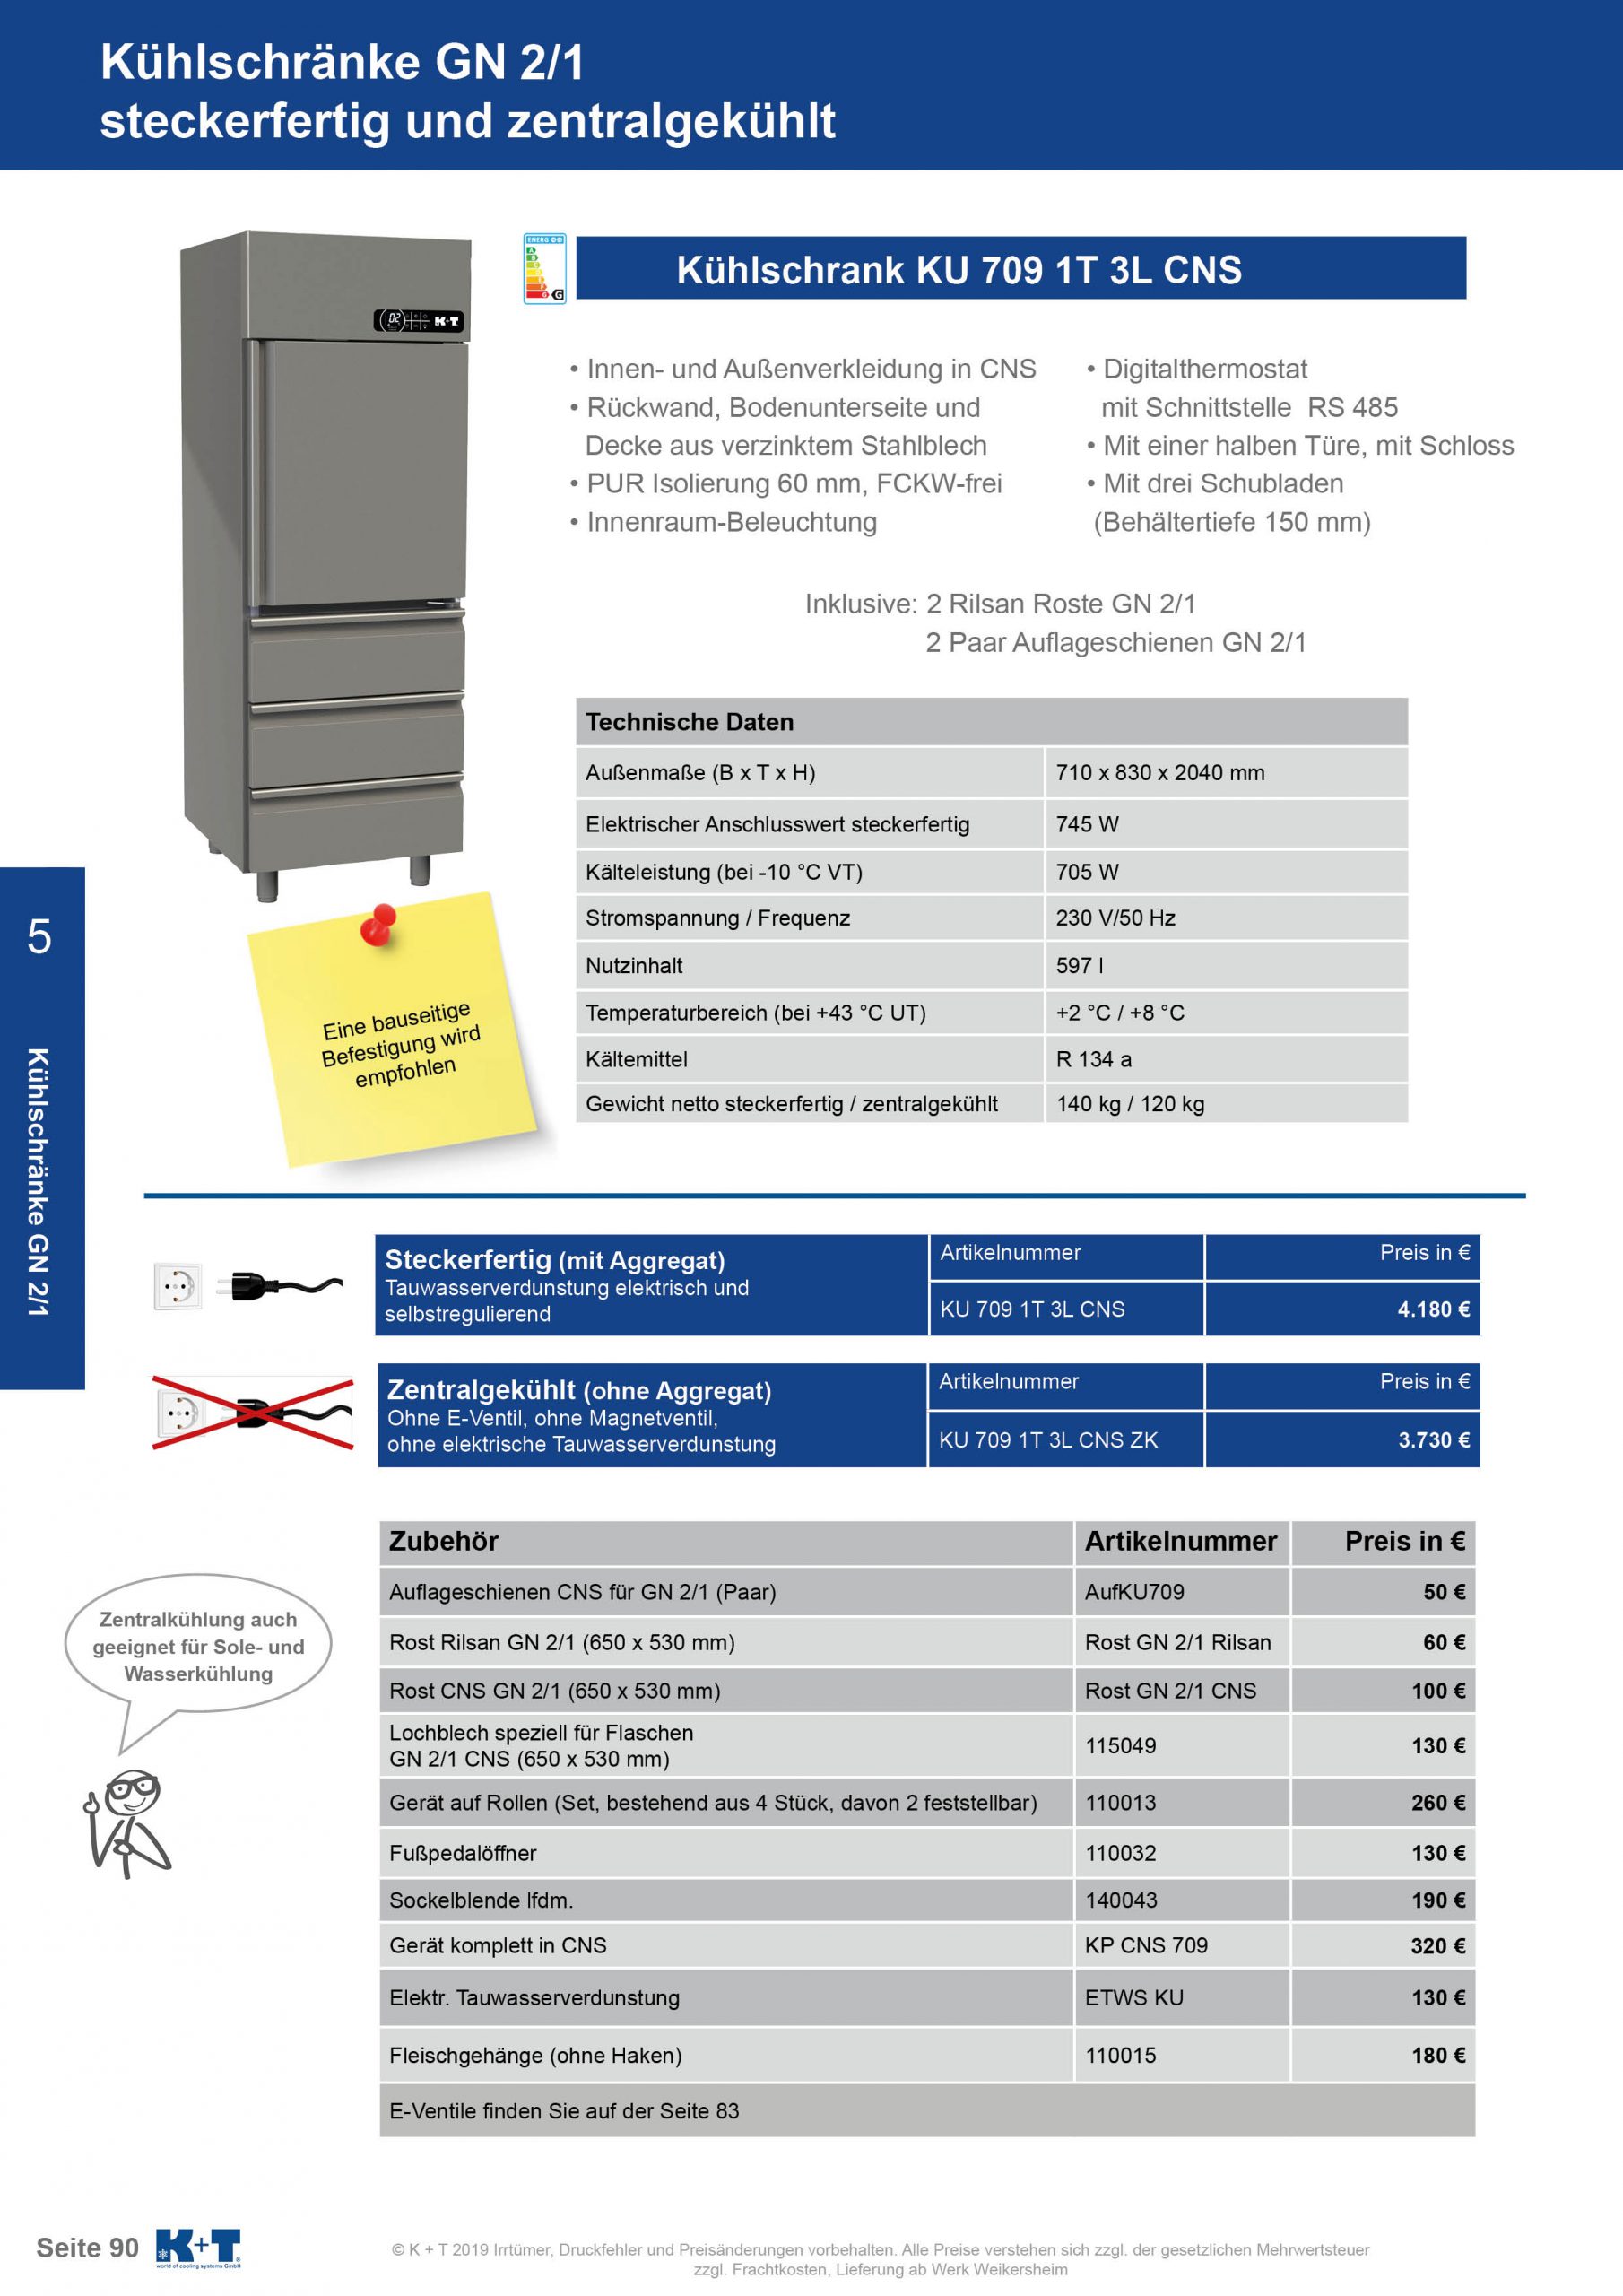 Kühlschränke GN 2_1 Kühlschrank mit ½ Tür und 3 Schubladen steckerfertig